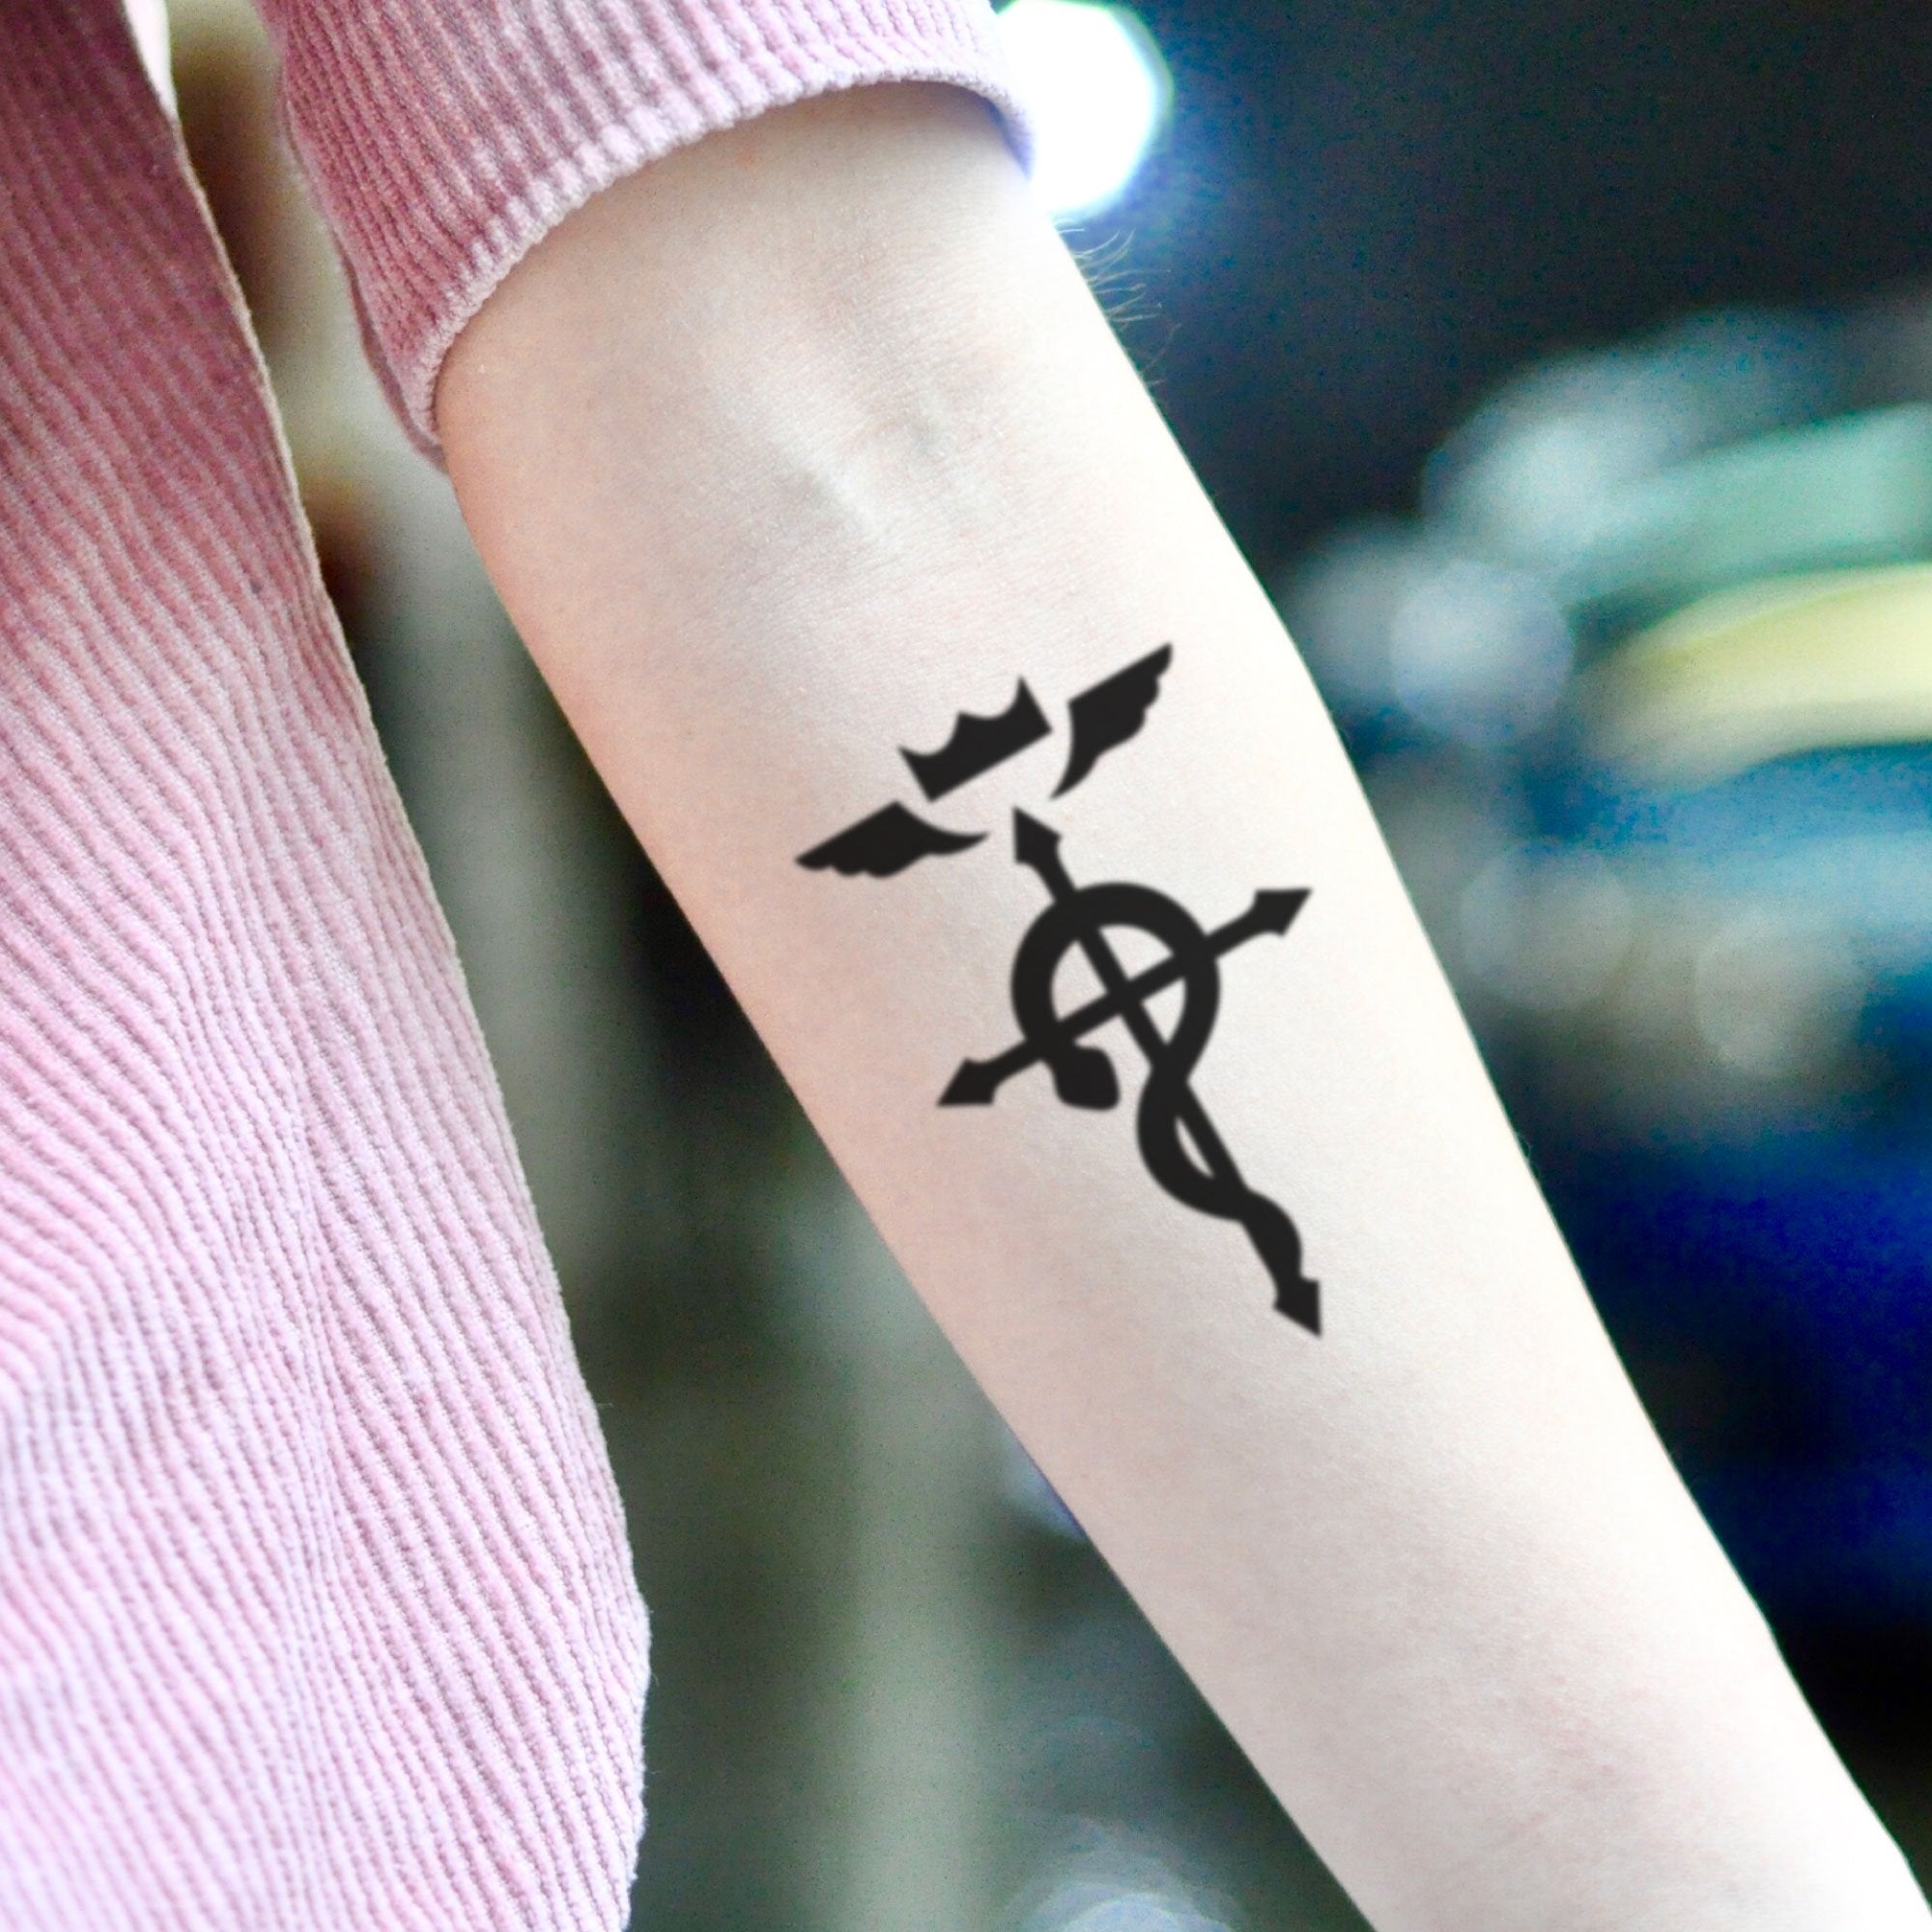 Fullmetal Alchemist Flamel Temporary Tattoo Sticker - OhMyTat